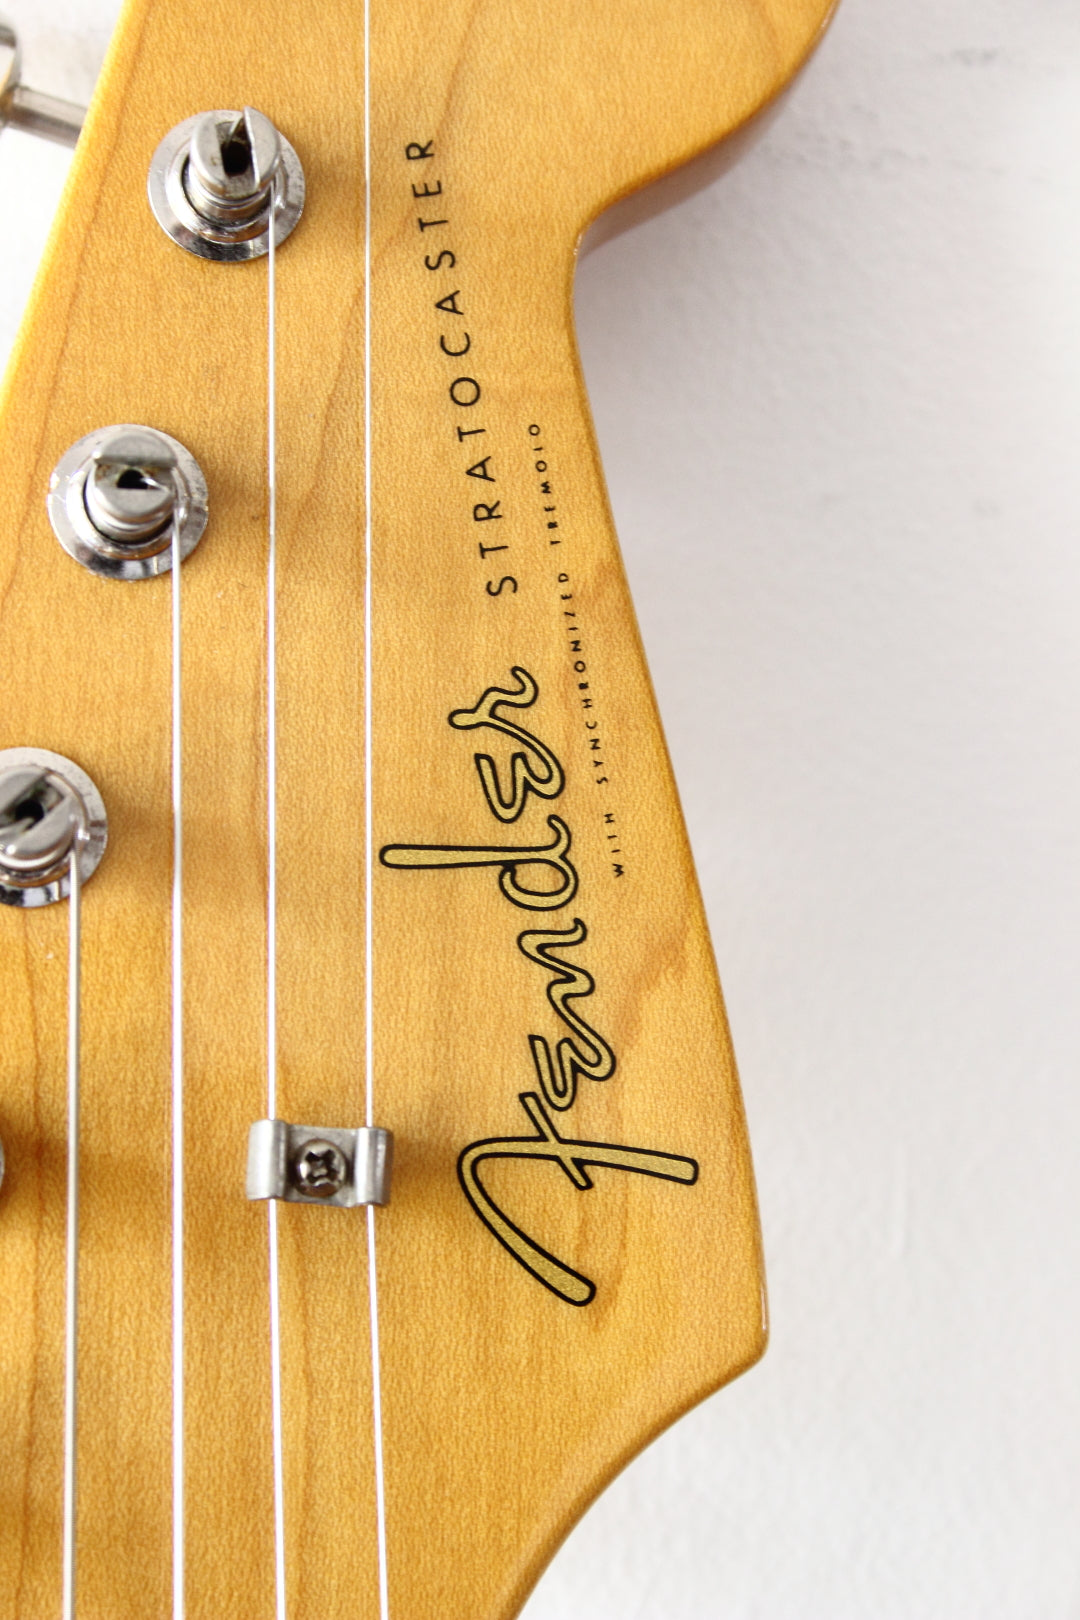 Fender '62 Reissue Stratocaster Aged Sonic Blue 2007-10